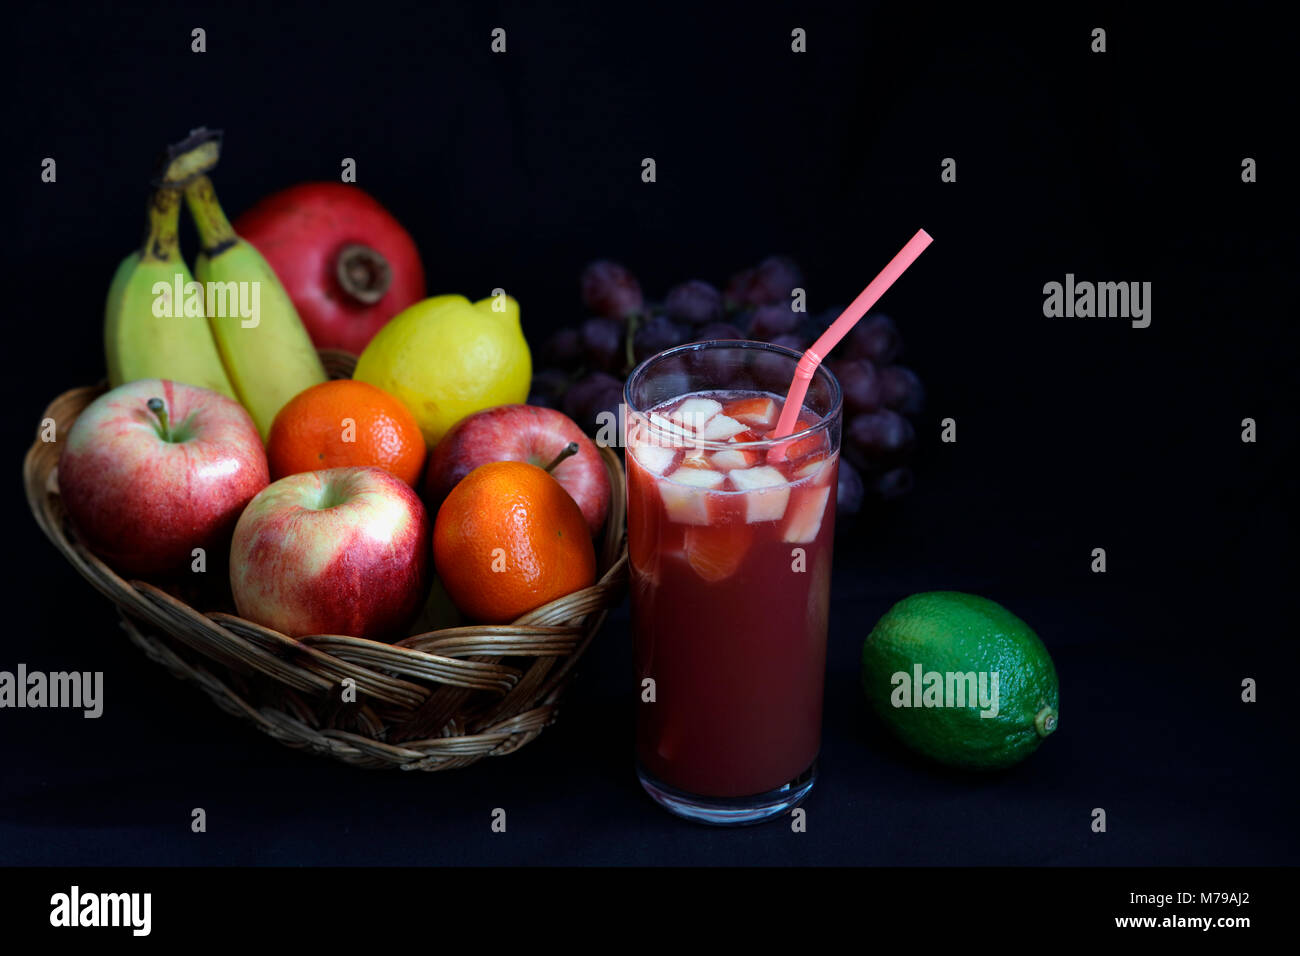 Cibo scuro - Chiaroscuro frutta mista nel cesto di vimini con punch alla frutta con sfondo scuro e spazio di copia Foto Stock